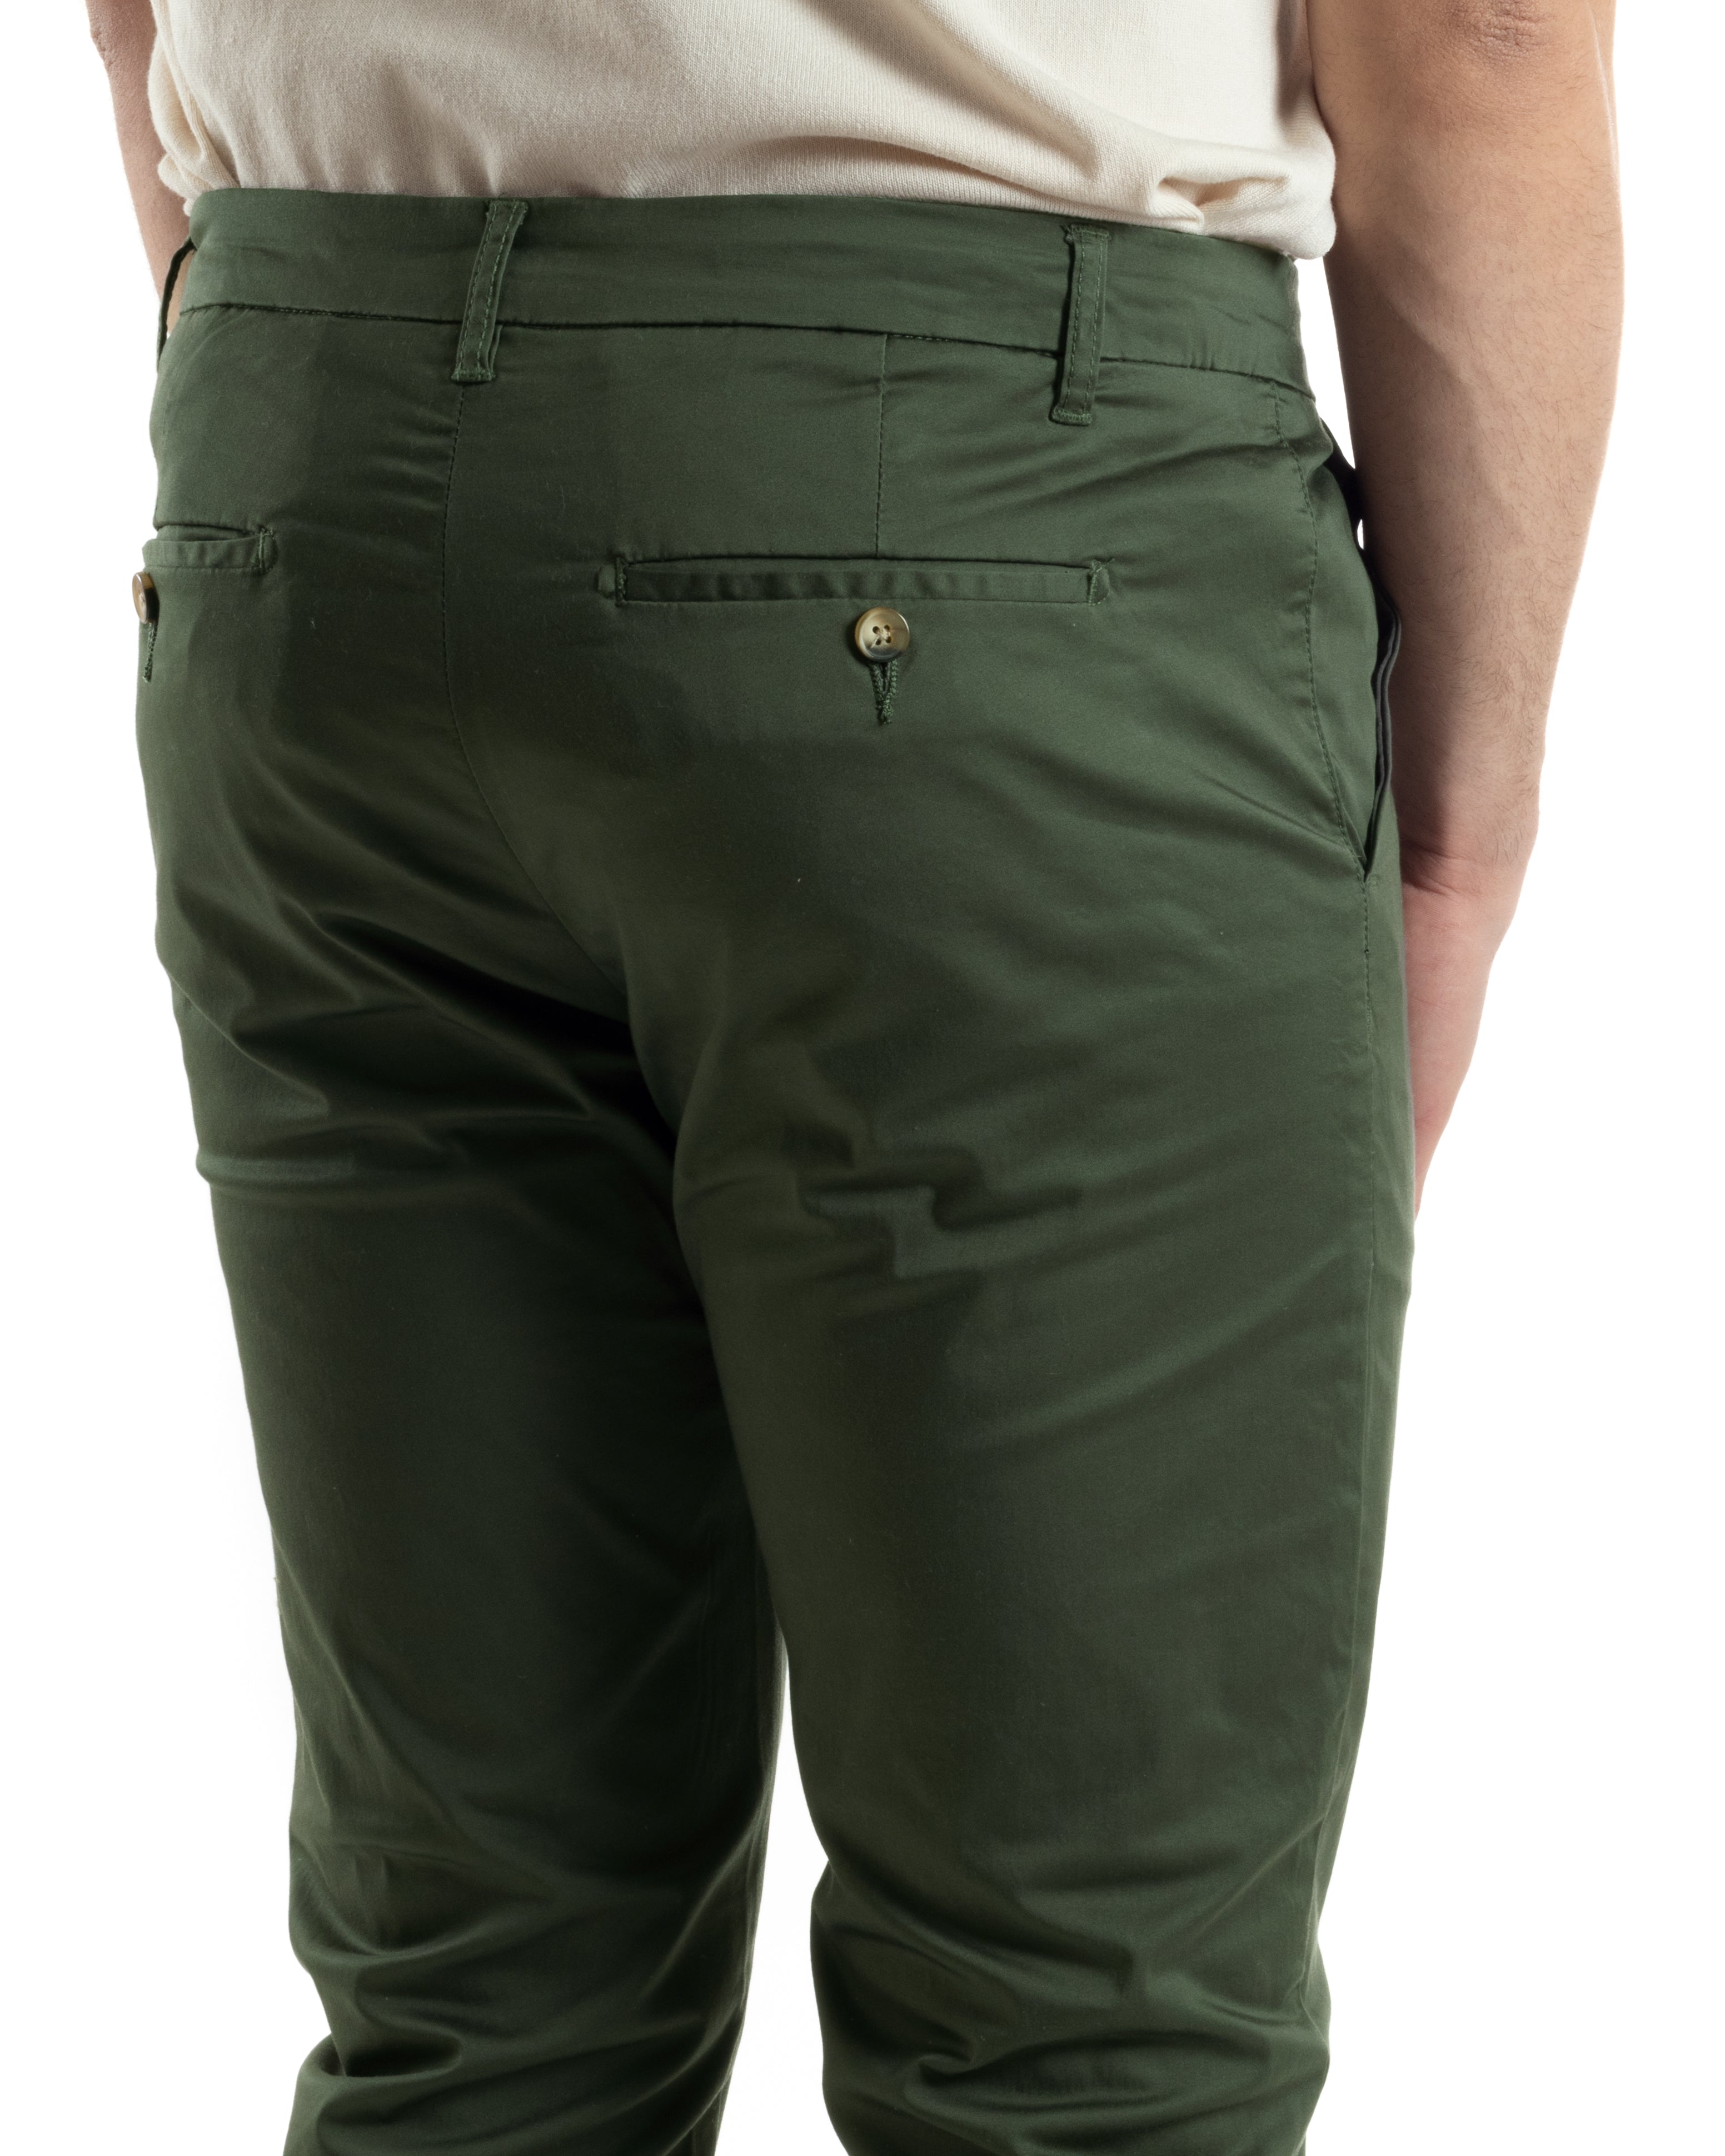 Pantaloni Uomo Cotone Raso Tasca America Slim Fit Abbottonatura Allungata Tinta Unita Verde GIOSAL-P6062A